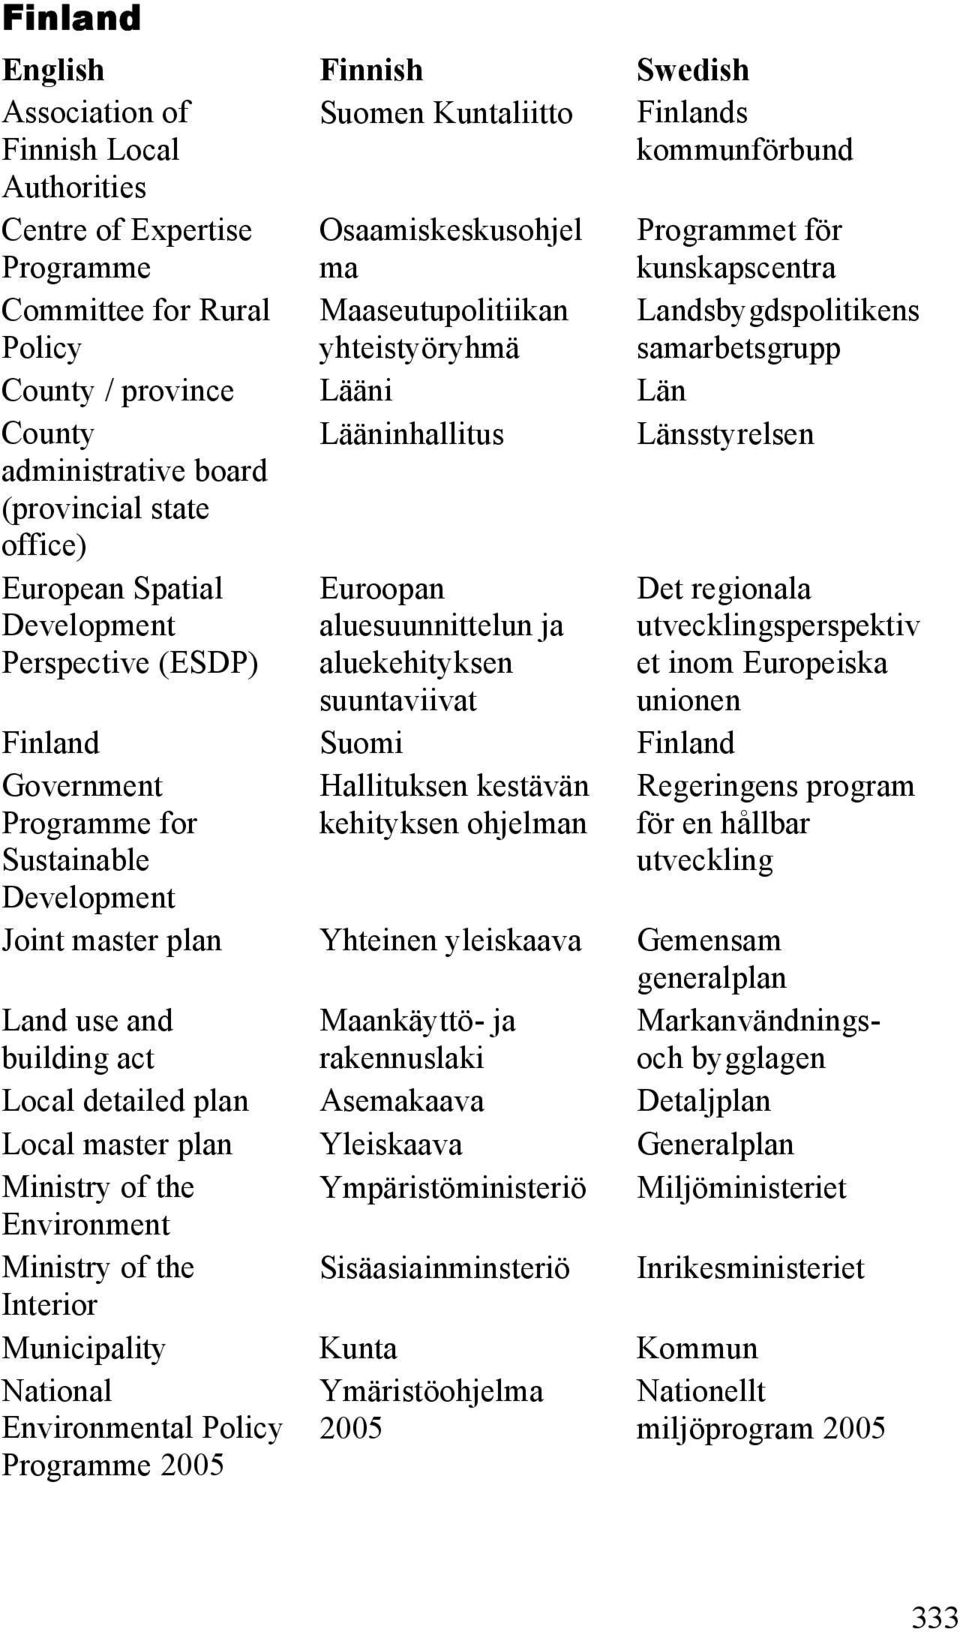 Länsstyrelsen European Spatial Development Perspective (ESDP) Euroopan aluesuunnittelun ja aluekehityksen suuntaviivat Det regionala utvecklingsperspektiv et inom Europeiska unionen Finland Suomi